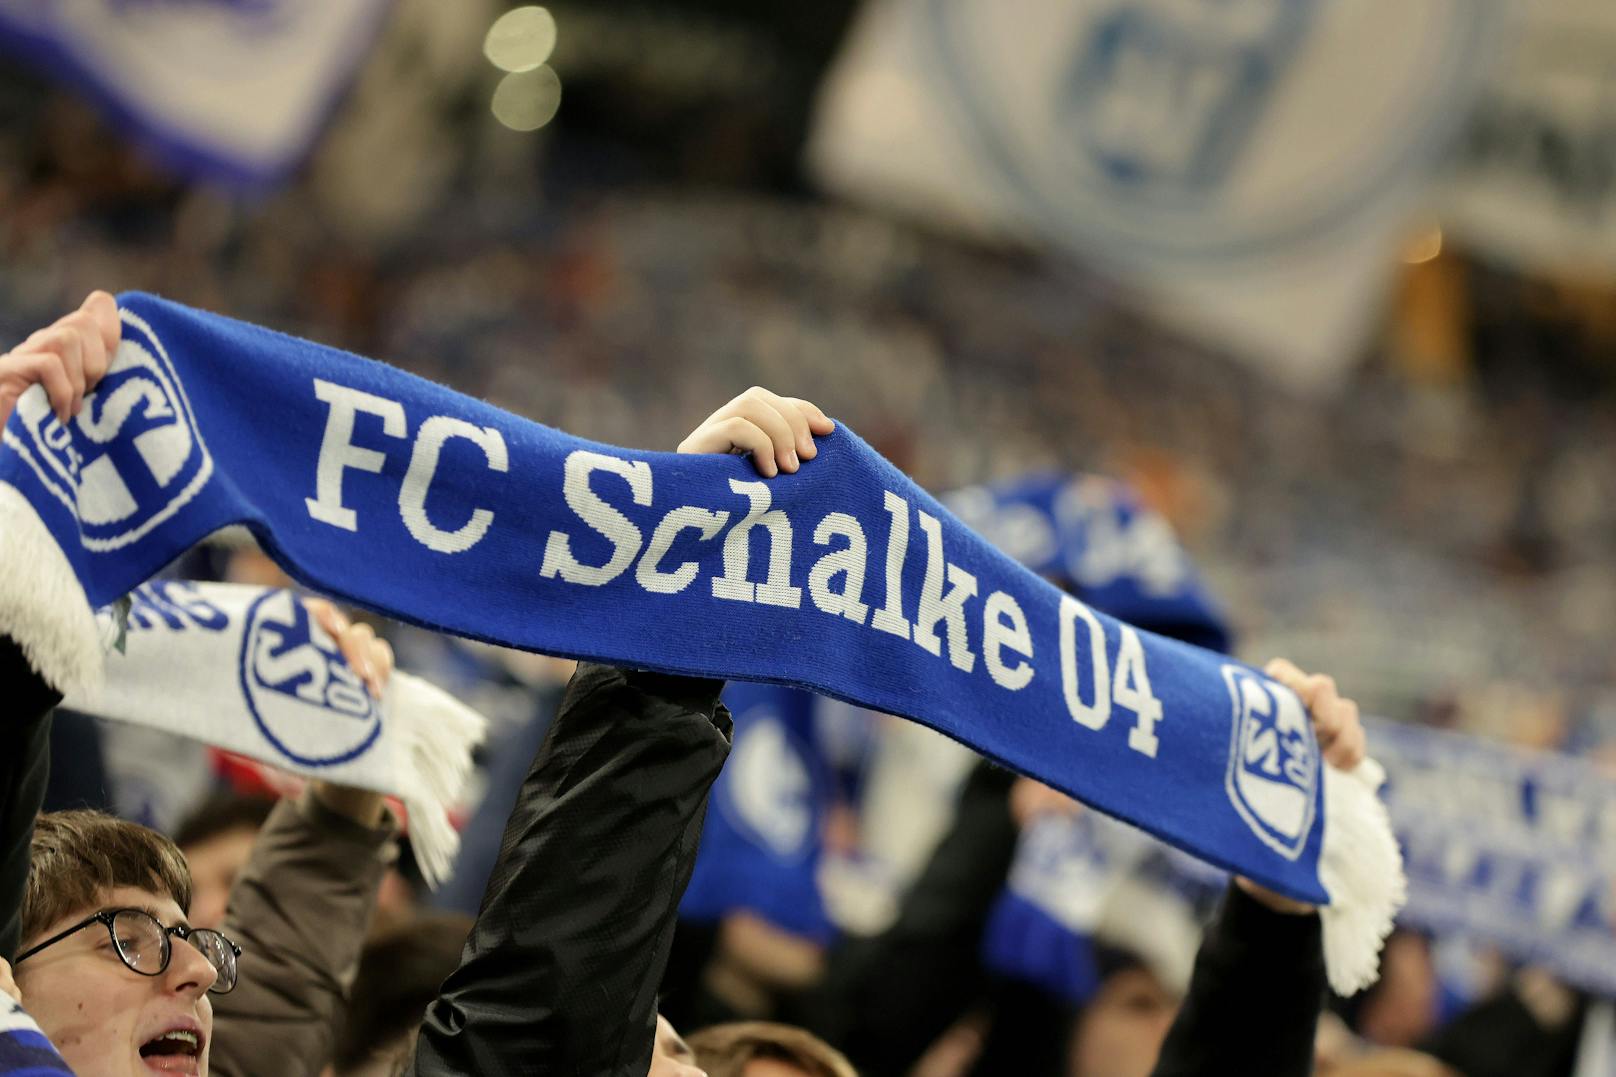 Schalke kommt auf Trainingslager nach Österreich